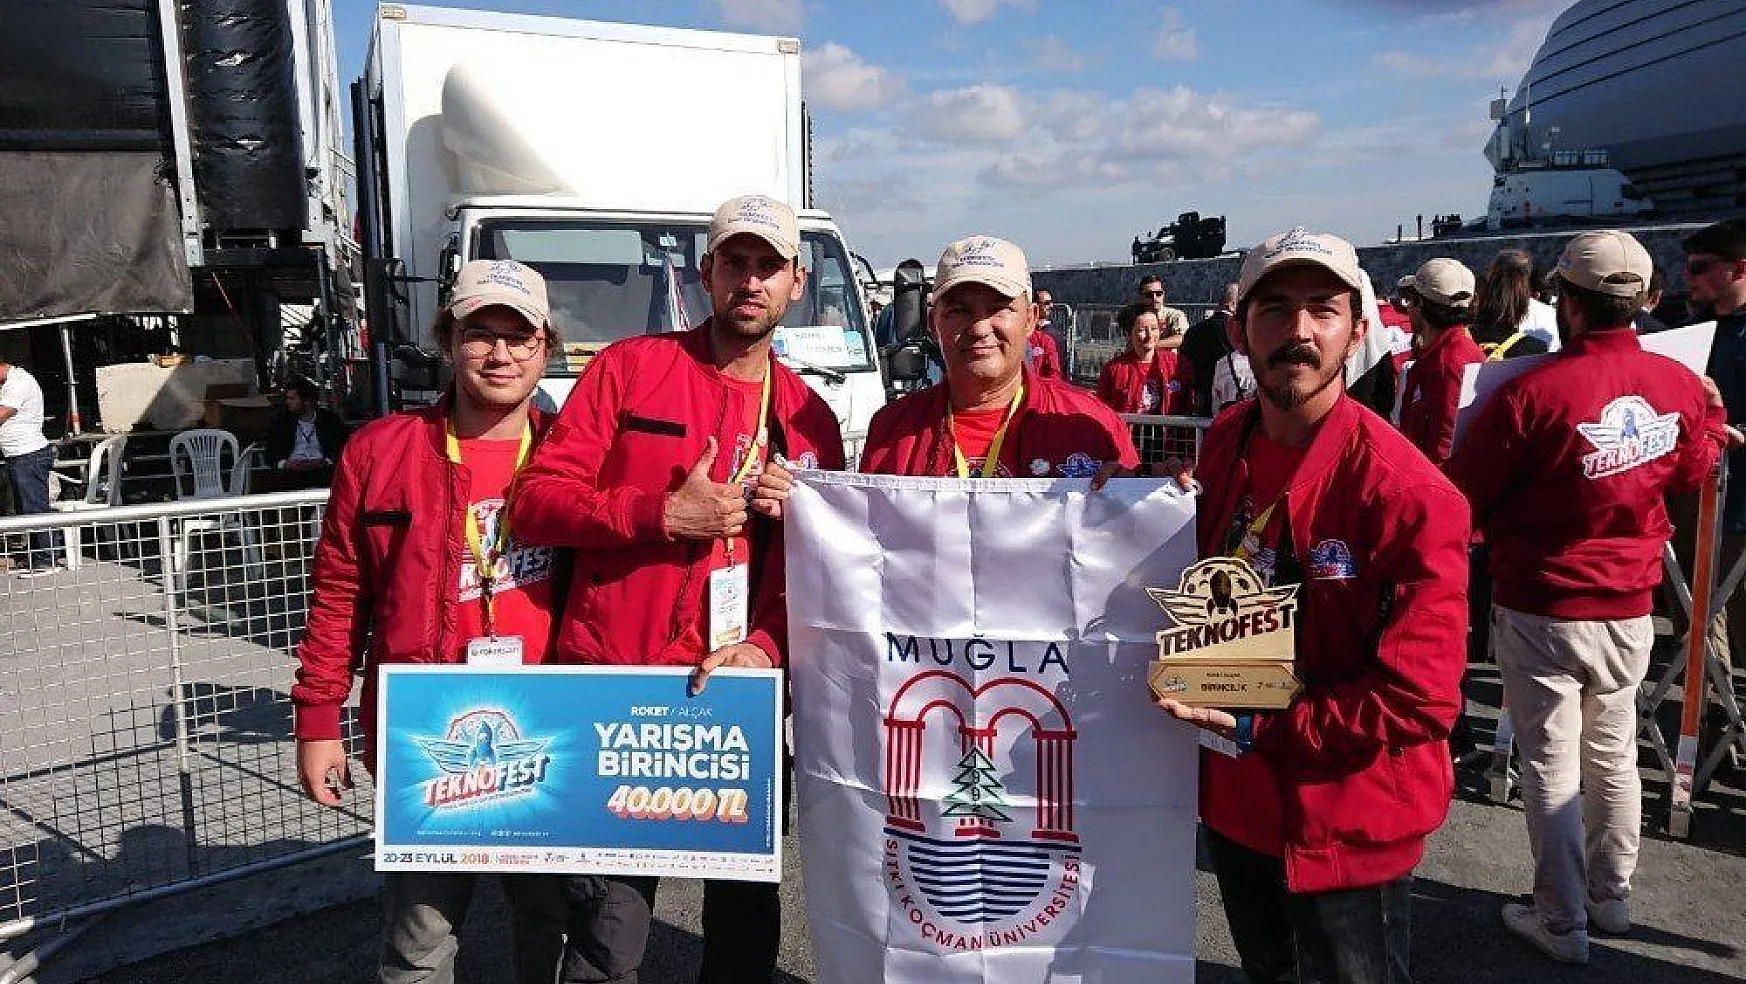 Gökova Roket Takımı Türkiye Şampiyonu oldu